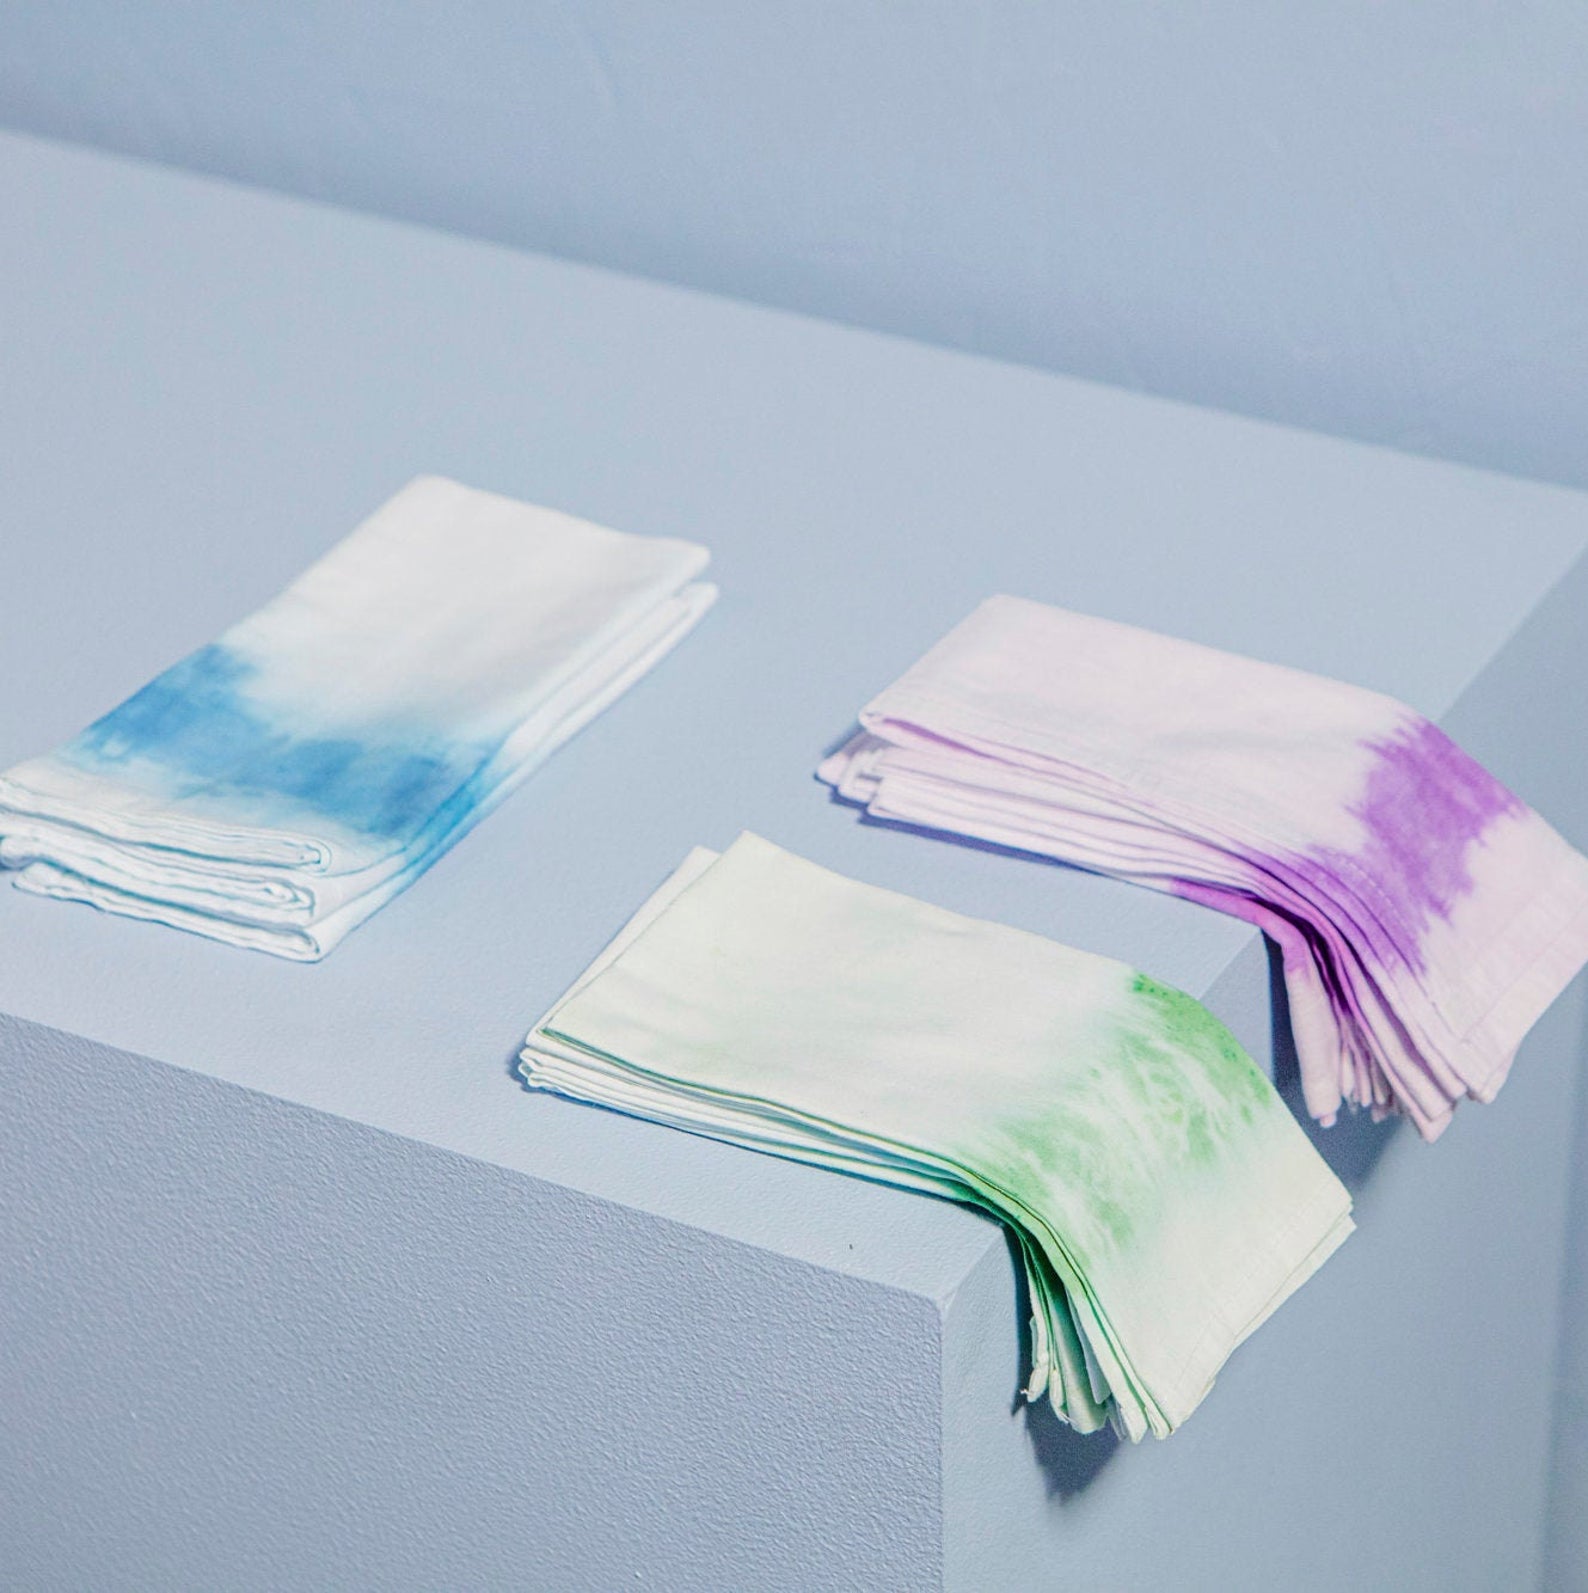 Ensemble de 2 serviettes bleues, 2 vertes, et 2 violettes, teintes en dégradé à la main en coton, 48,32 les 6 serviettes.